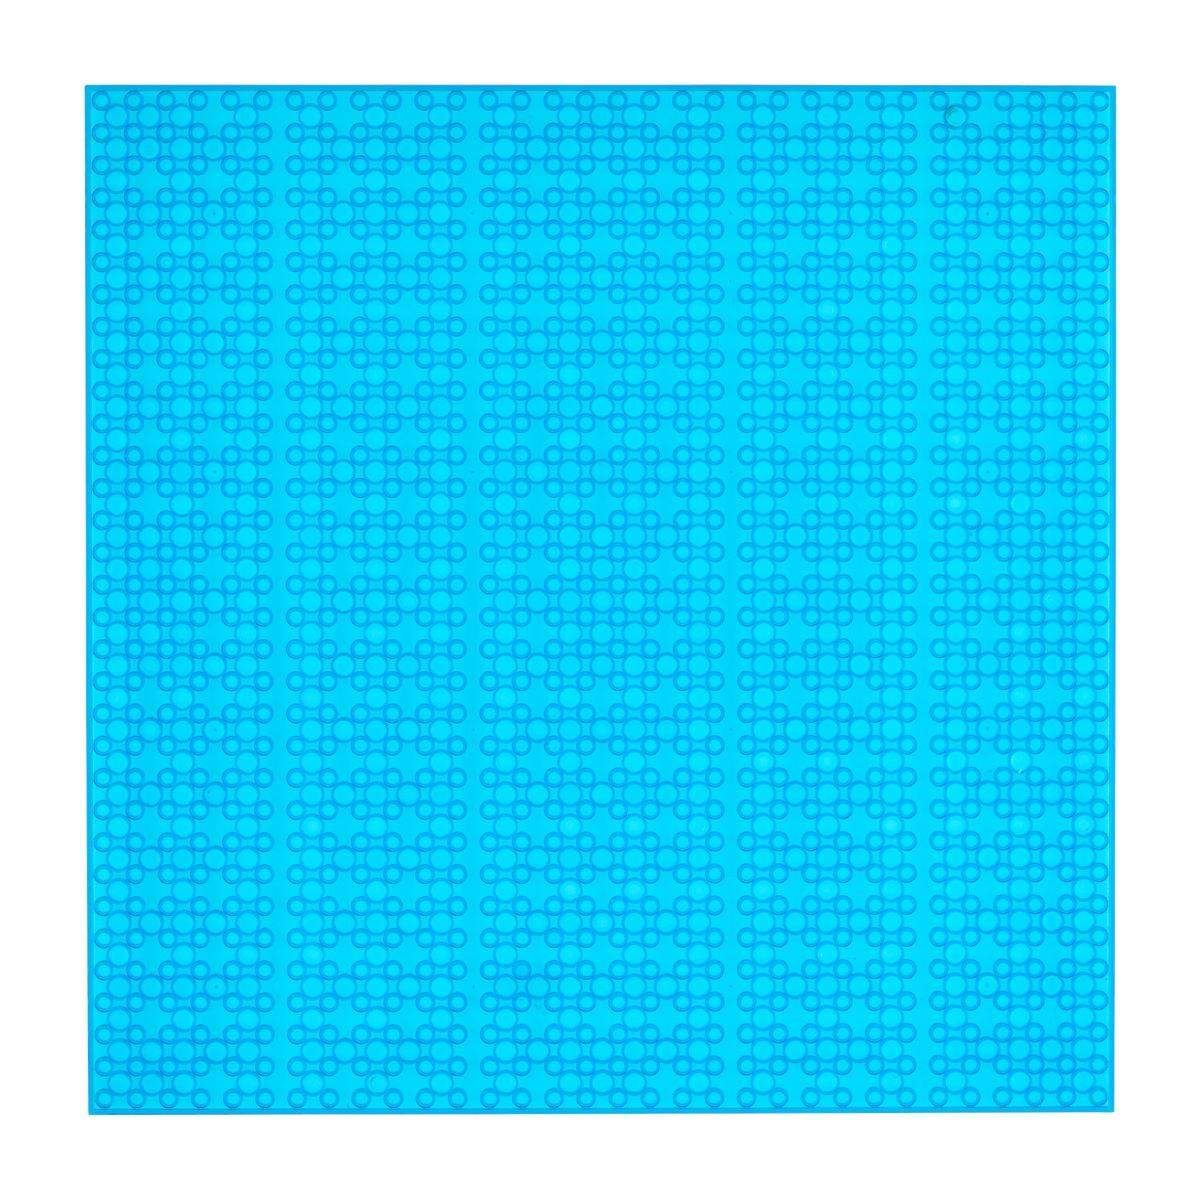 Open Bricks Baseplate 32x32 transparent blue